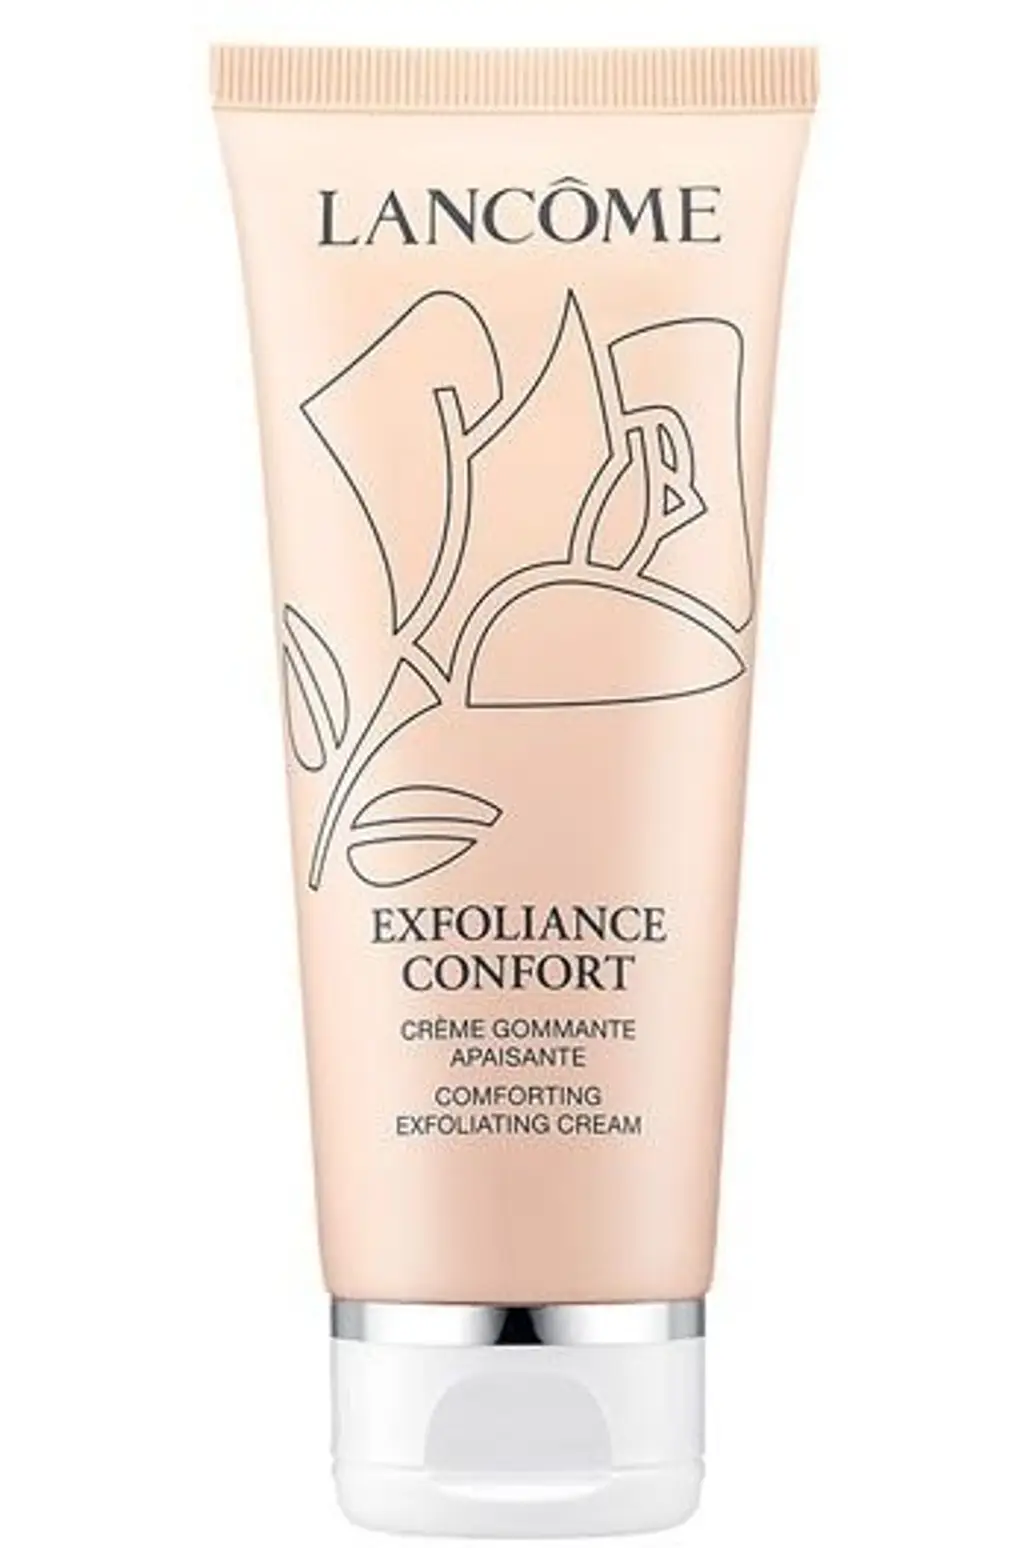 Lancôme Exfoliance Confort Comforting Exfoliating Cream